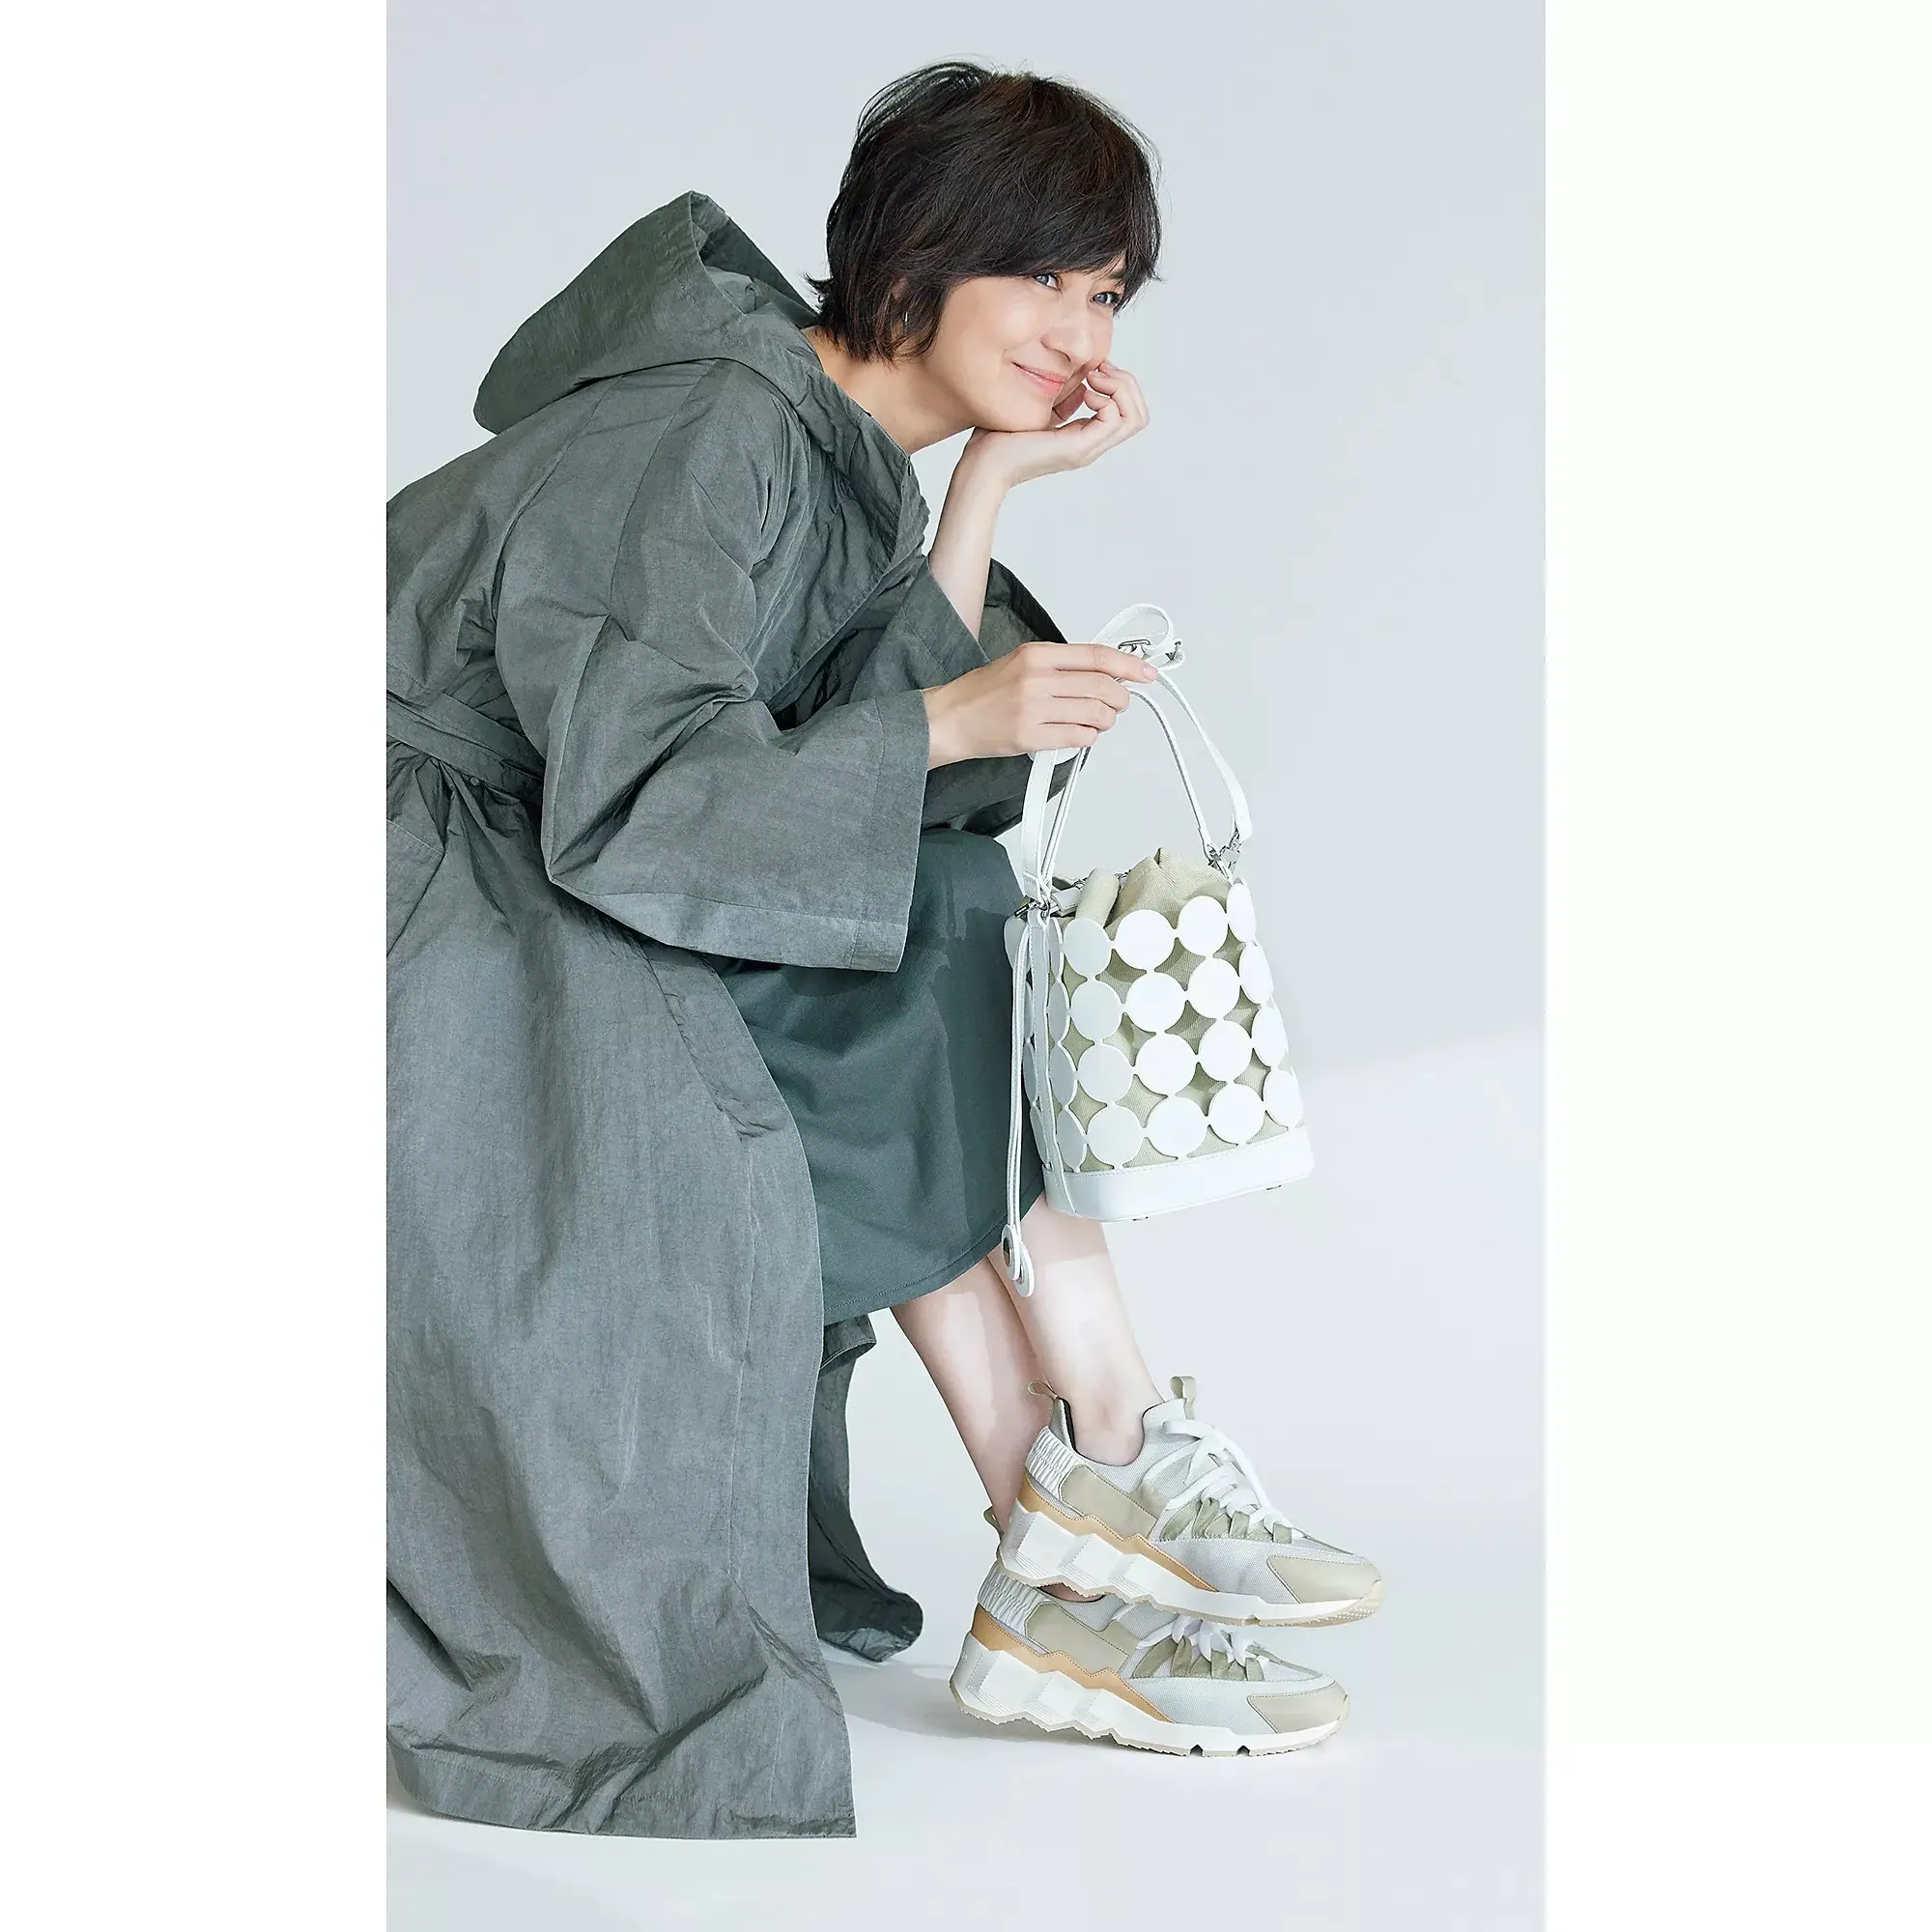 富岡佳子さんがまとう春の名小物「PIERRE HARDY」のバケットバッグ 